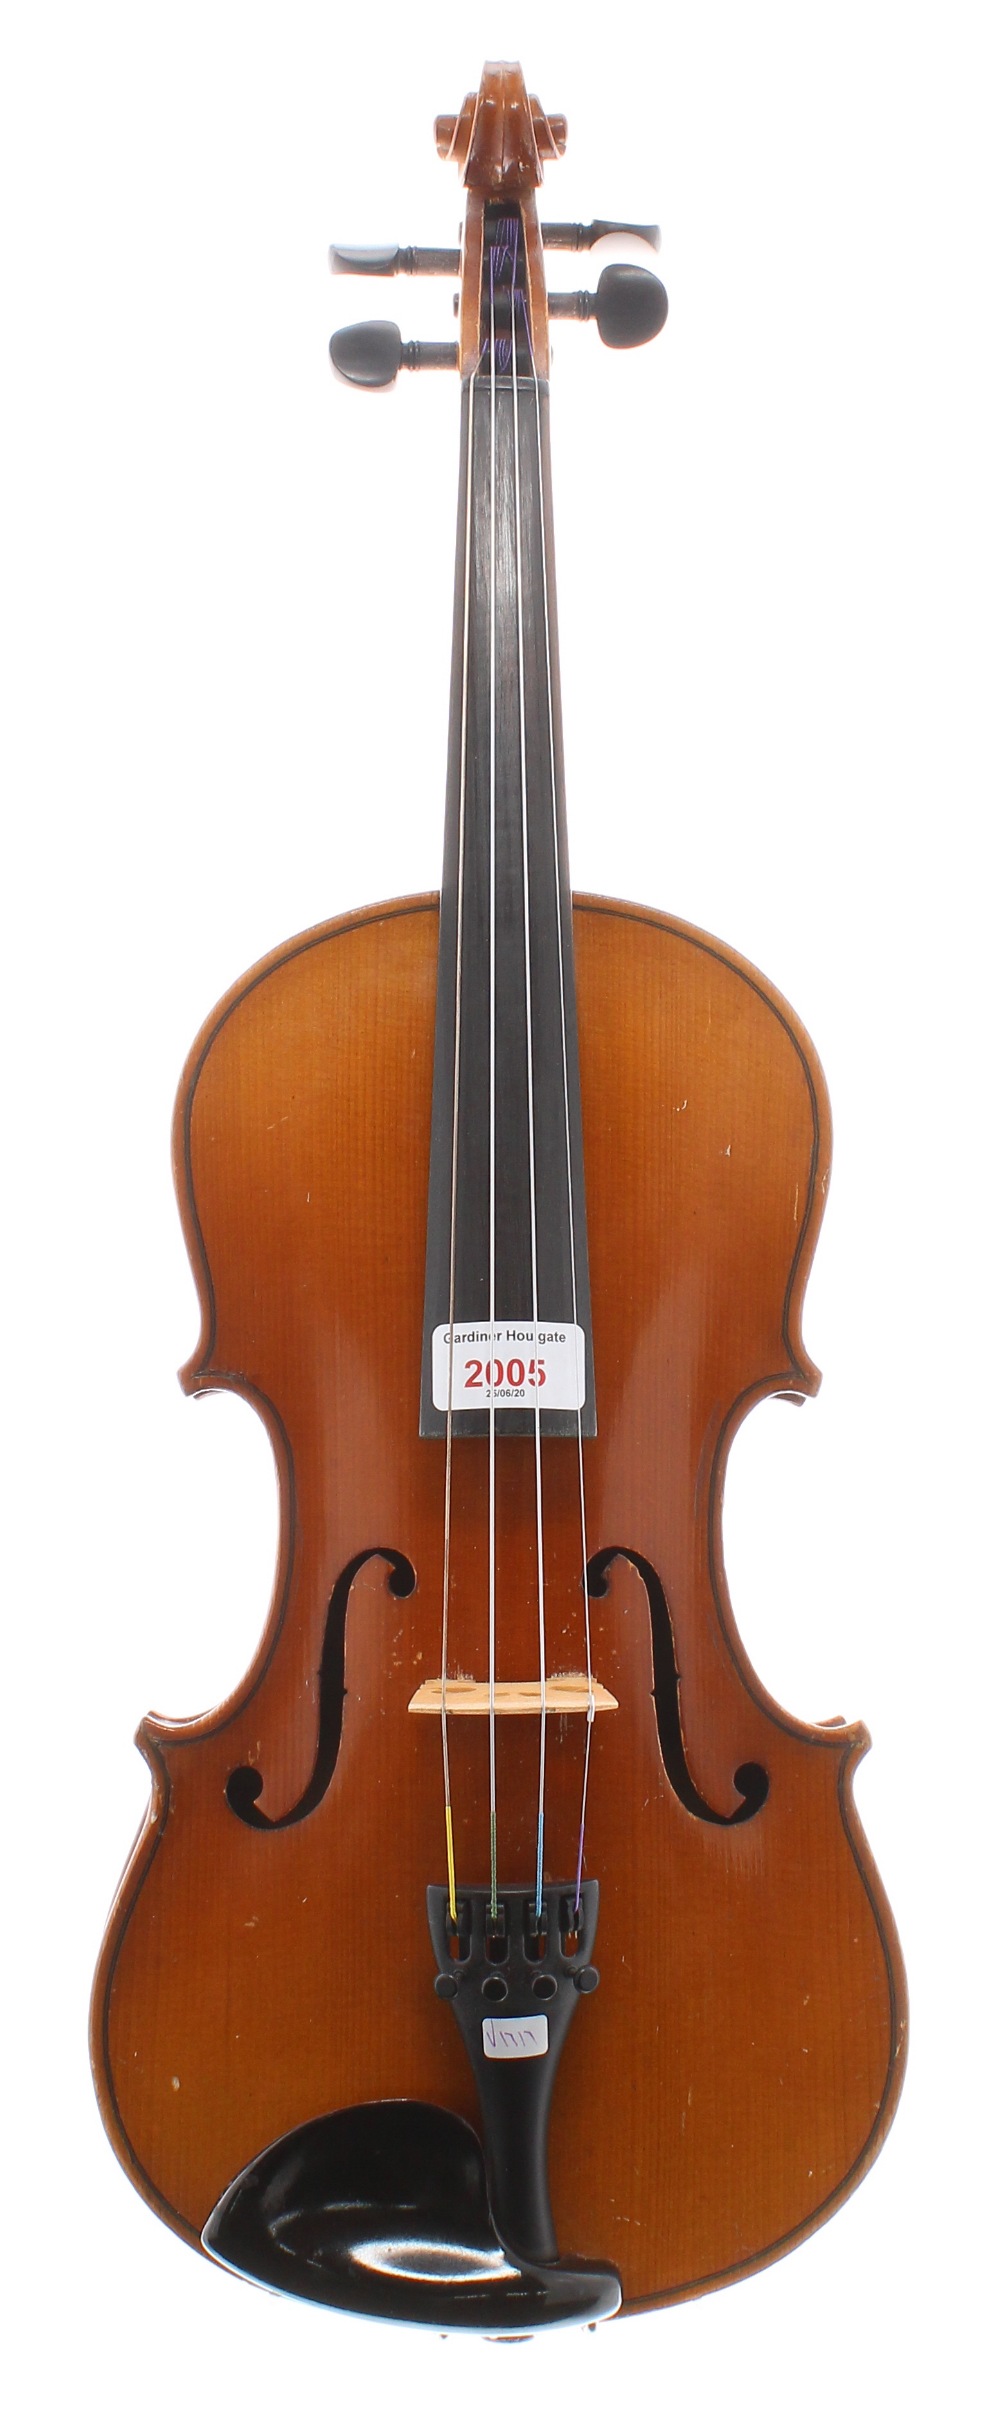 Mid 20th century German violin, 14 1/4', 36.20cm